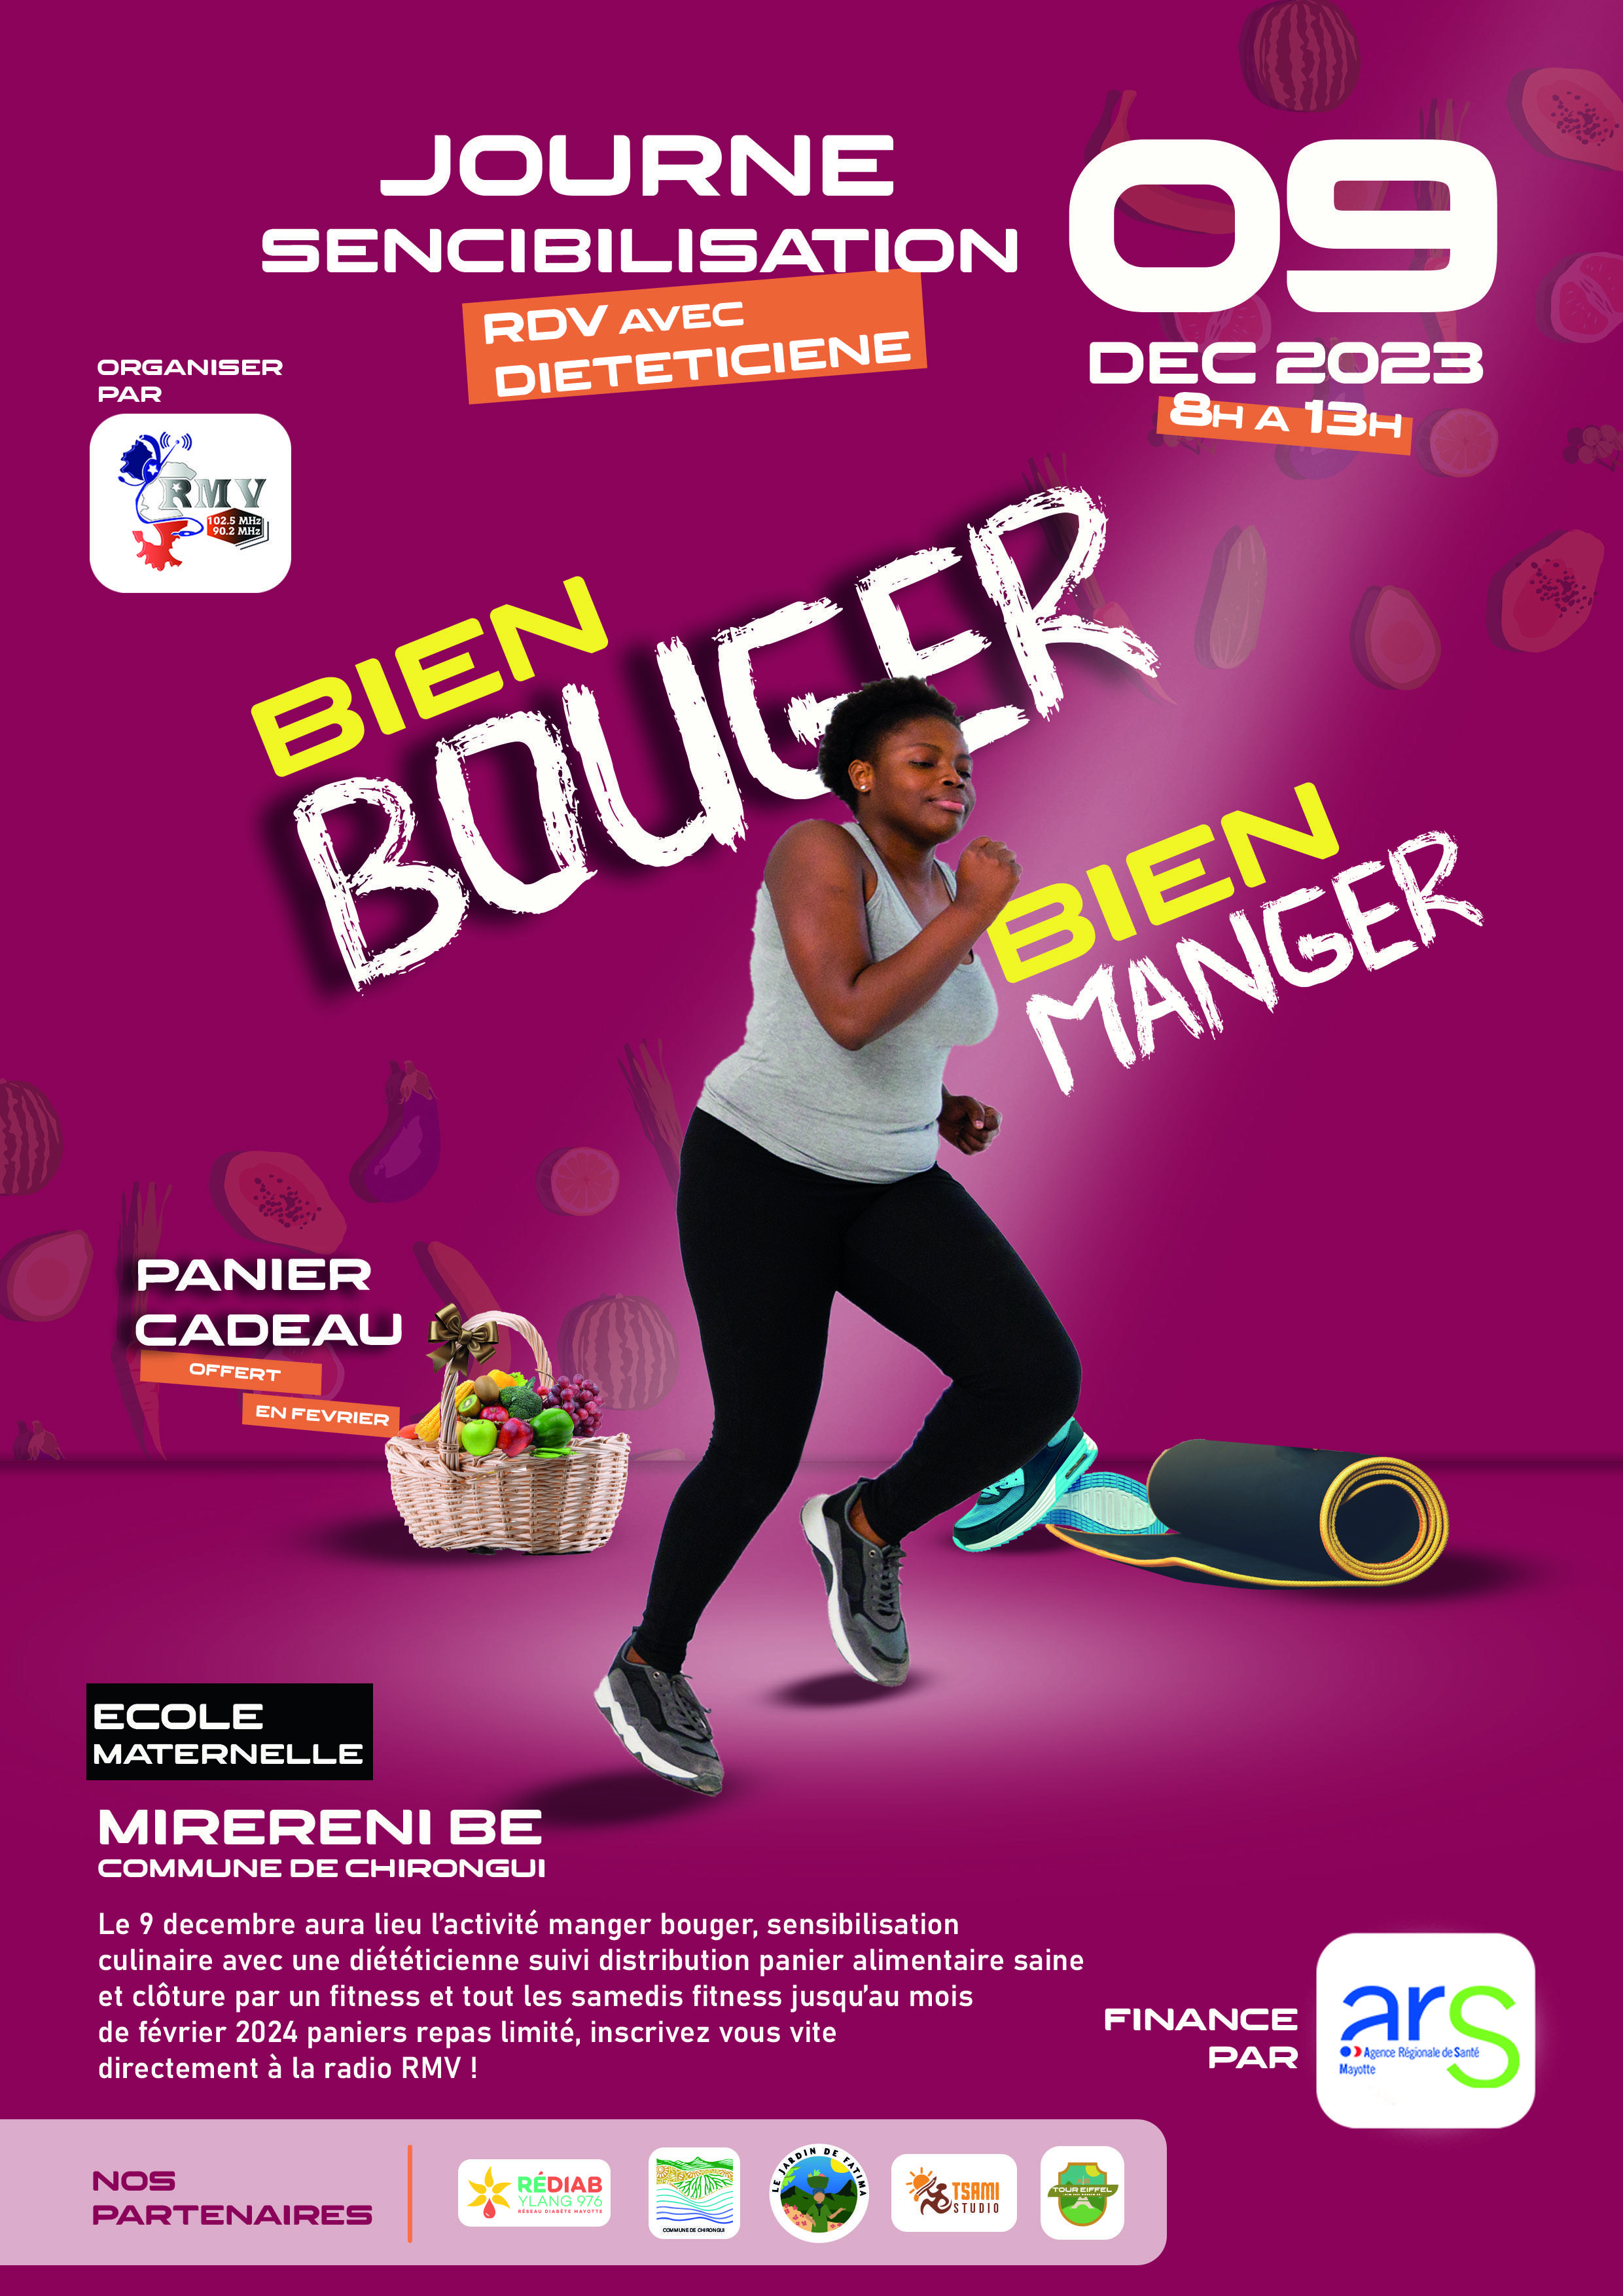 Journée de Sensibilisation "Manger Bouger" : Une Initiative Salutaire à Miréréni-Bé